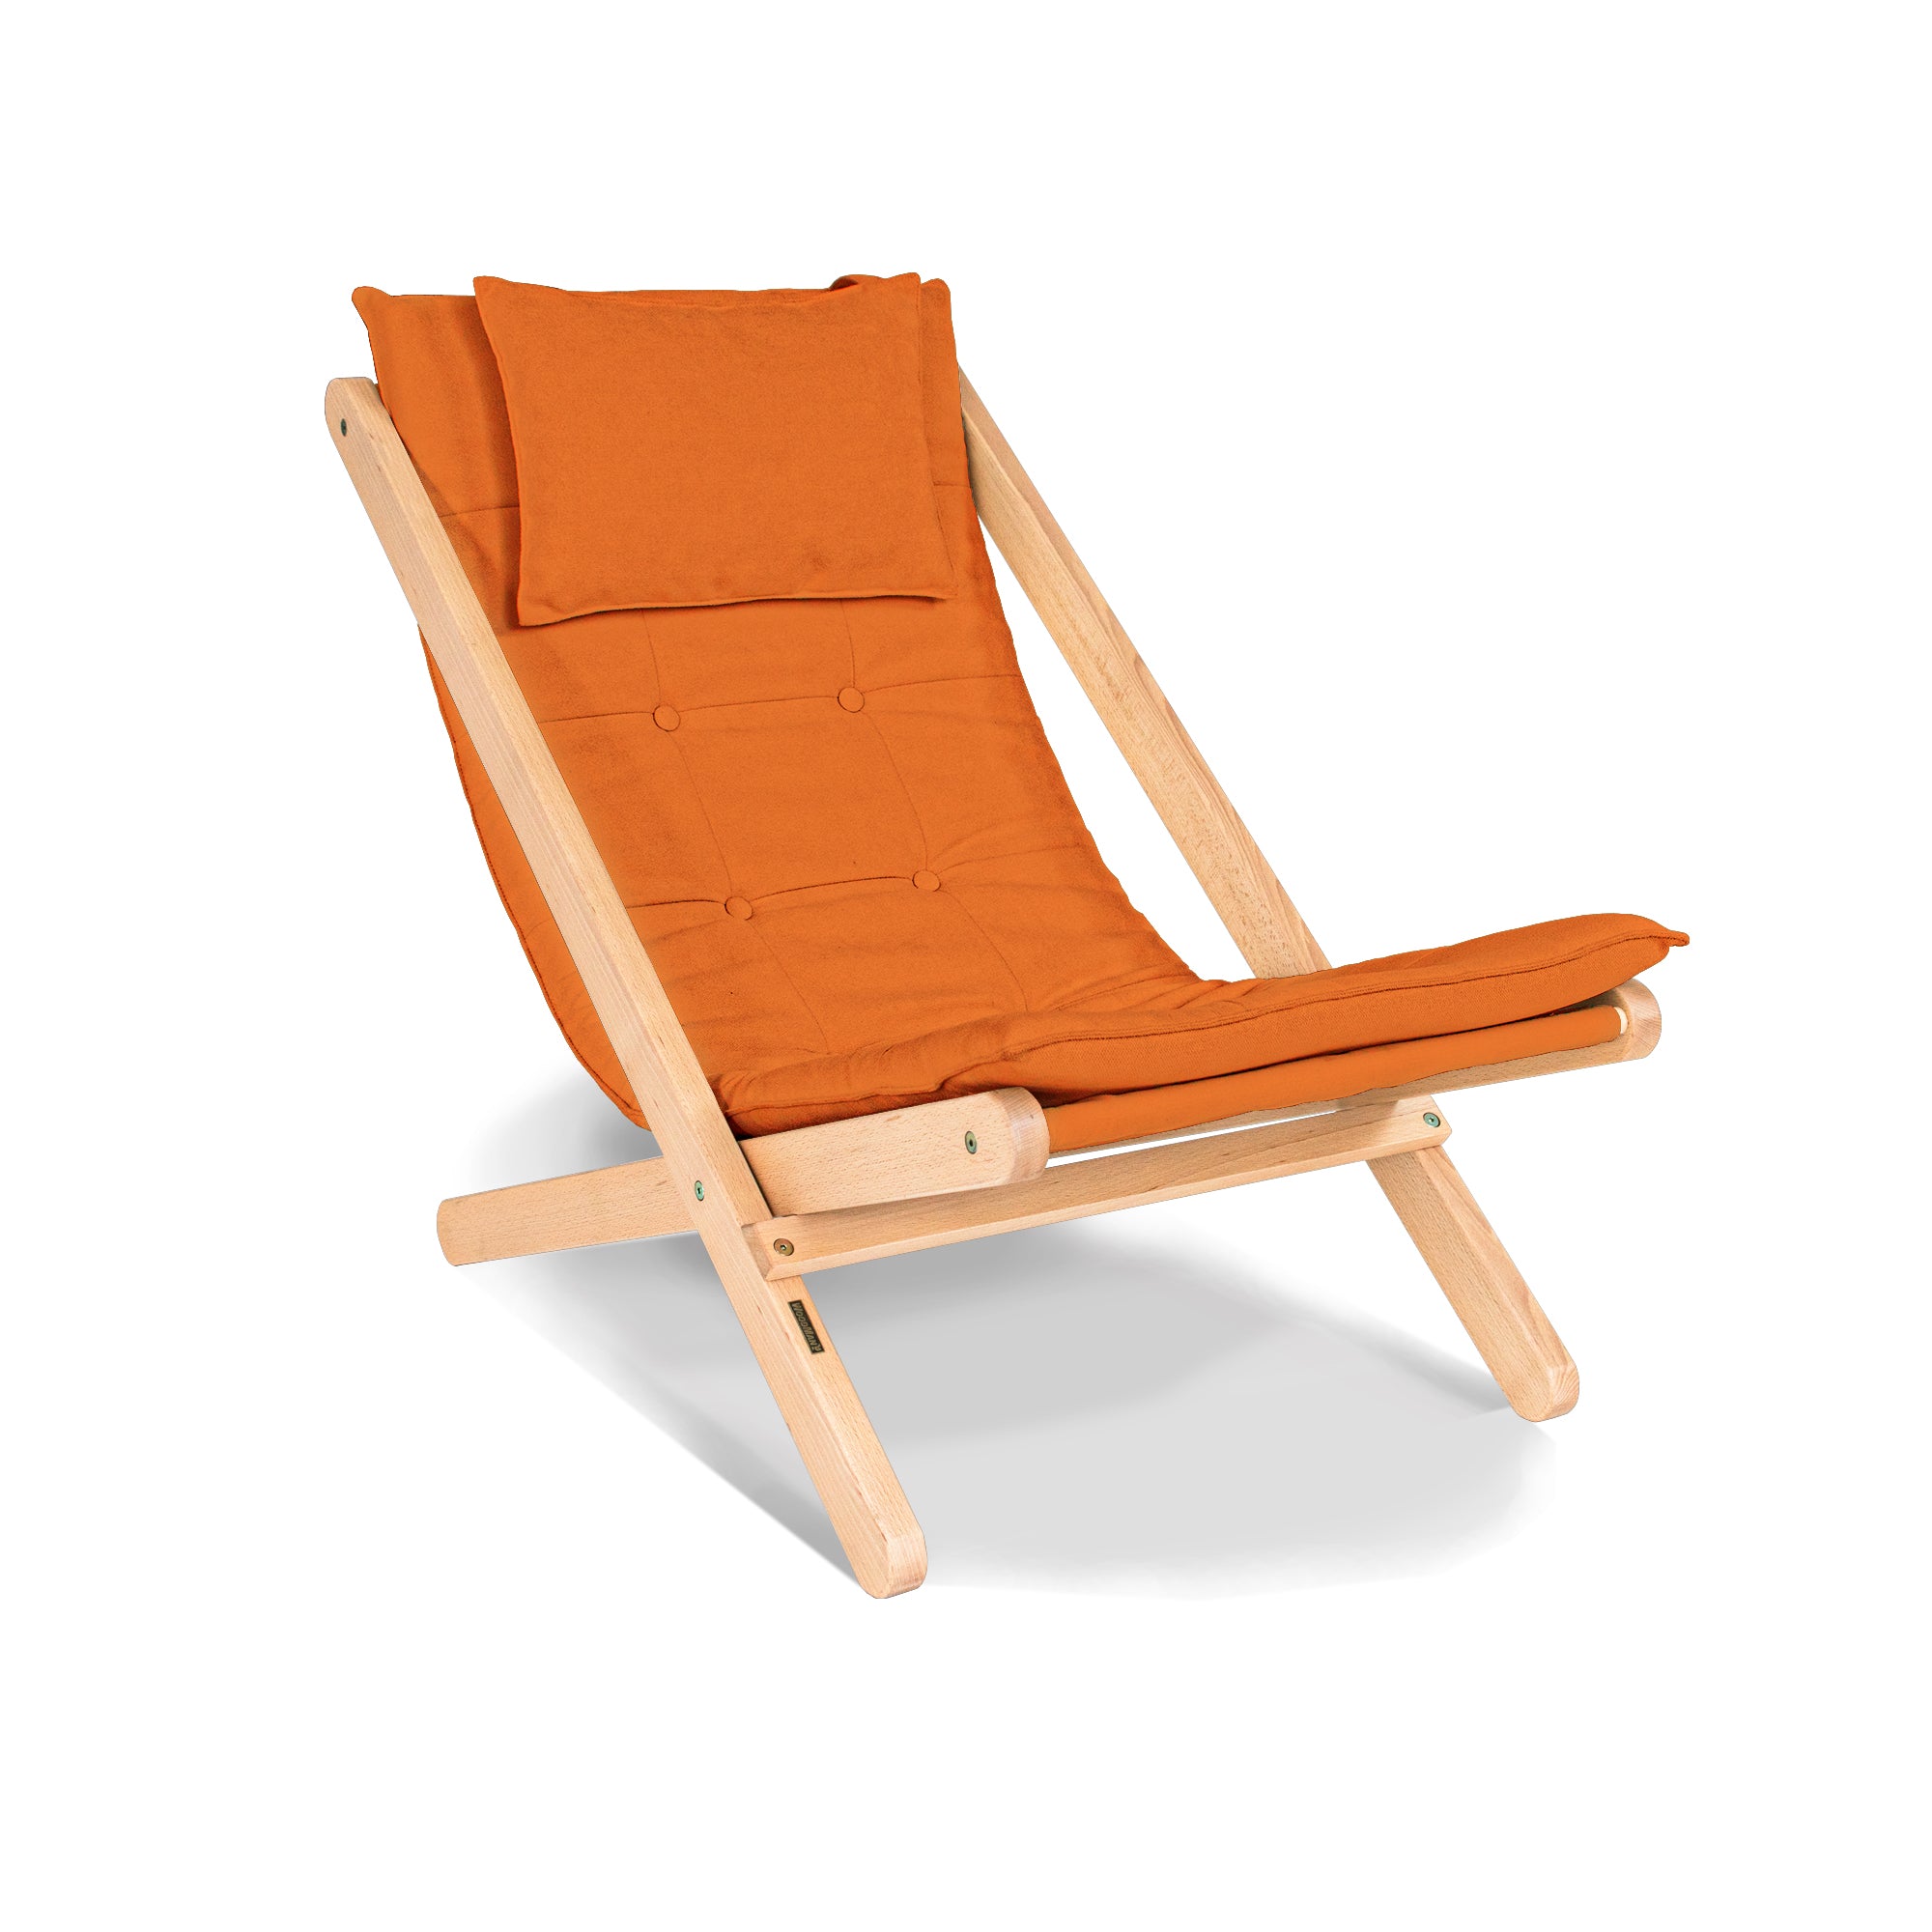 ALLEGRO Deckchair -orange fabric